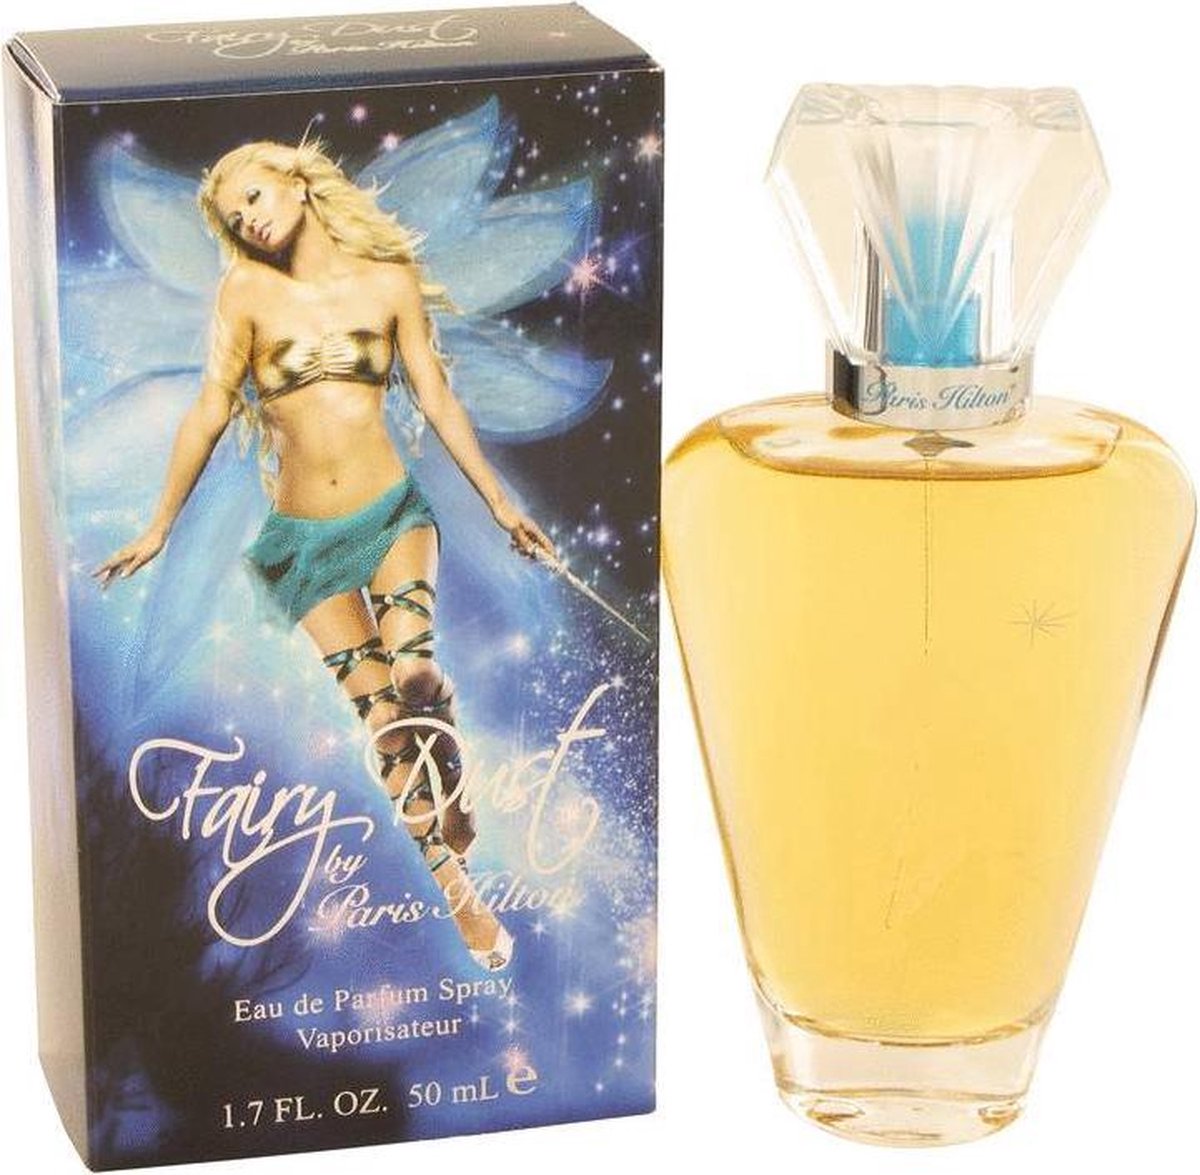 Fairy Dust Paris Hilton - 50 ml - Eau de parfum